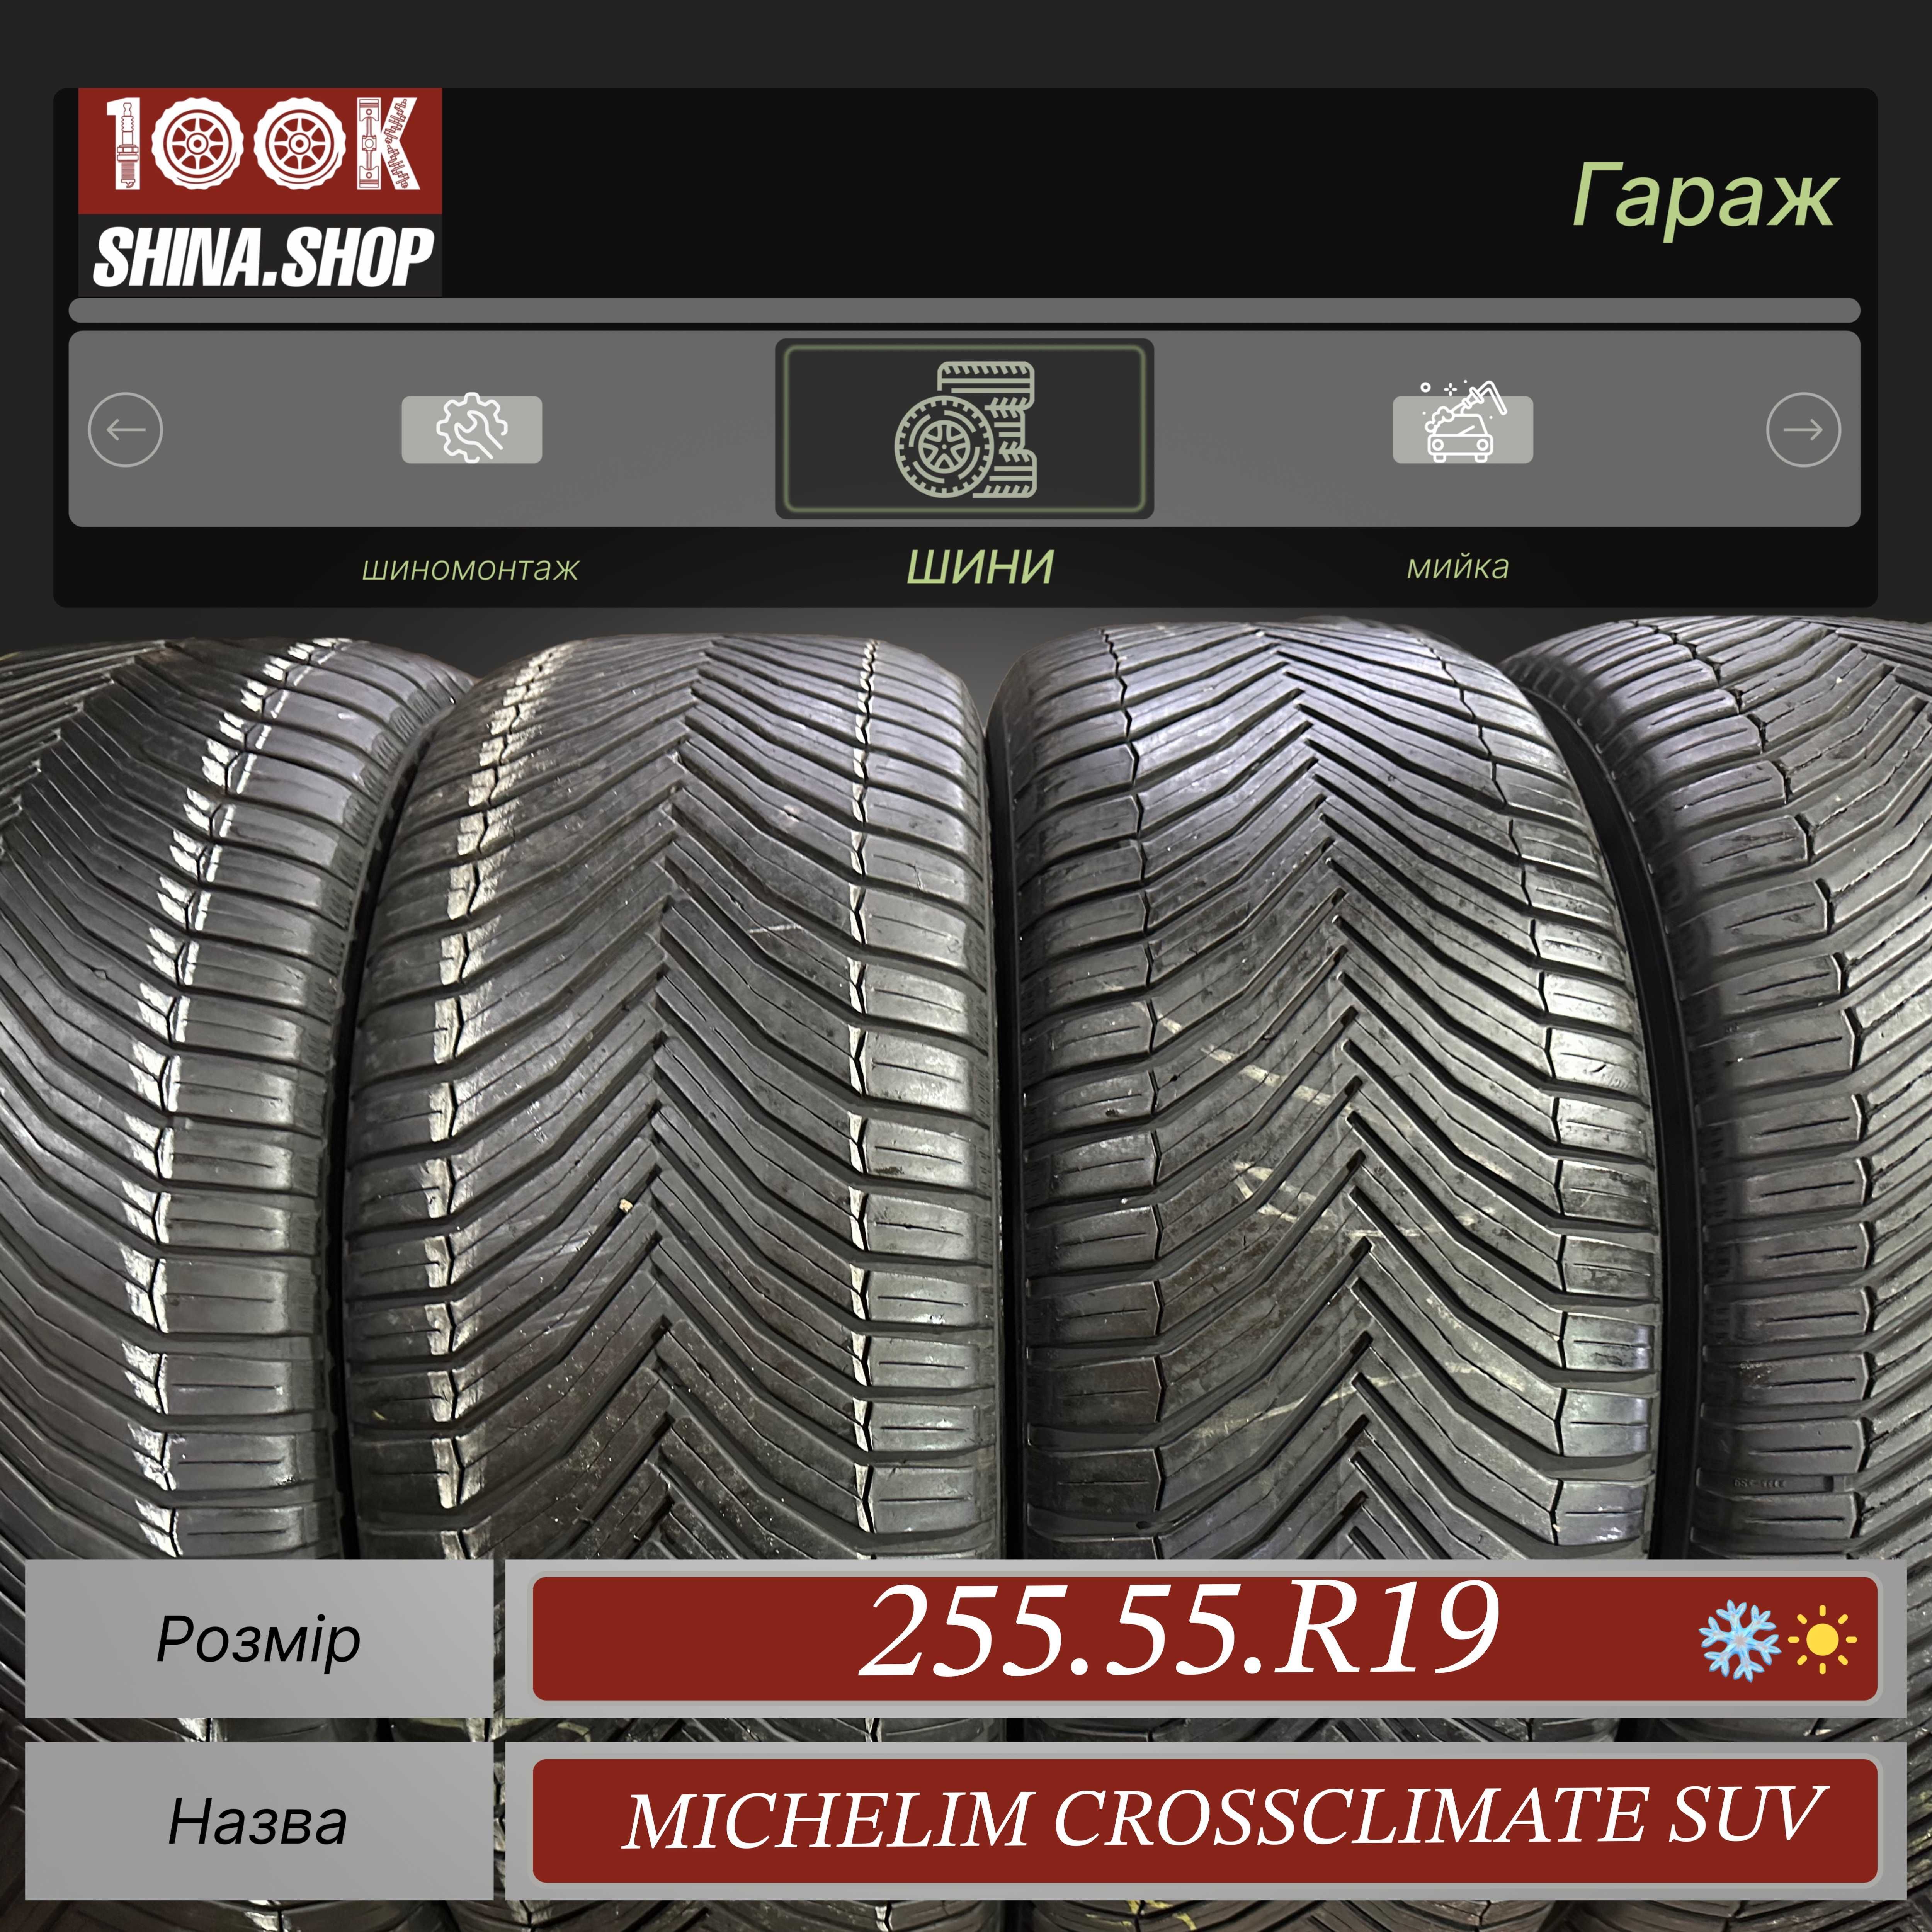 Шины БУ 255 55 R 19 Michelin Cross Climate SUV Резина